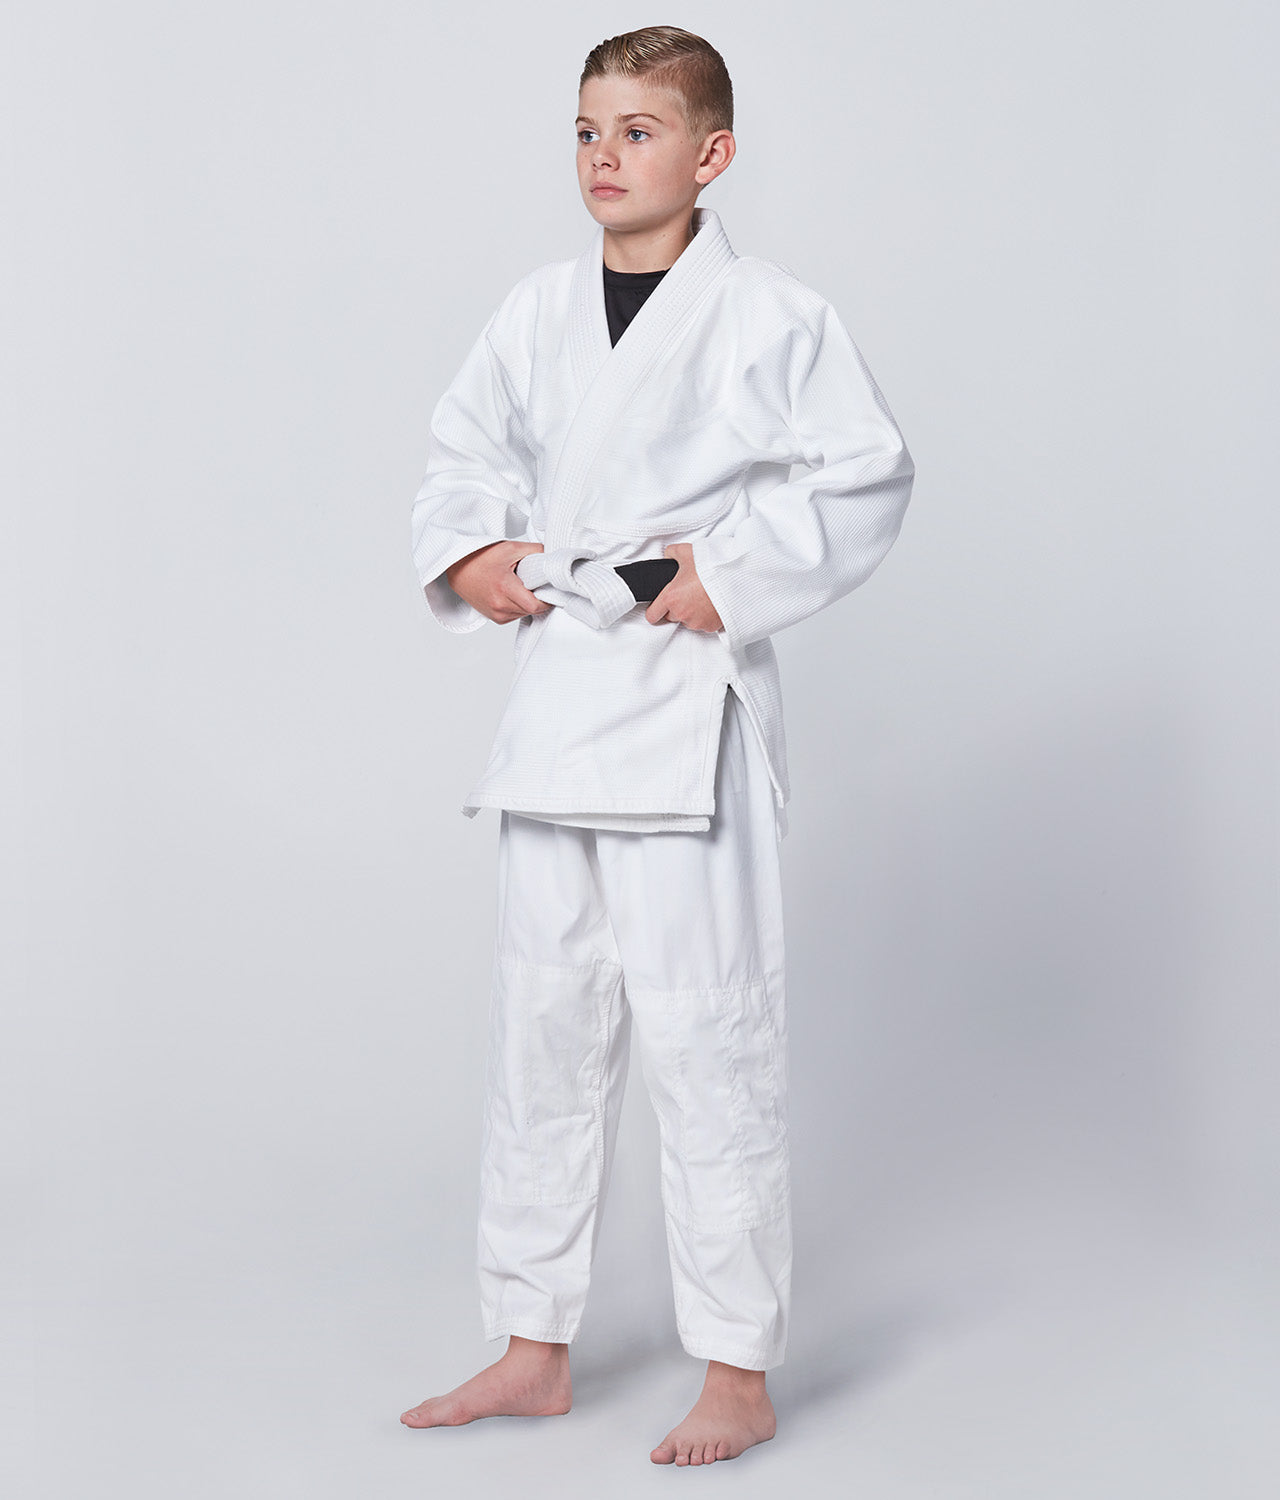 Elite Sports Kids' Essential White Brazilian Jiu Jitsu BJJ Gi Side View